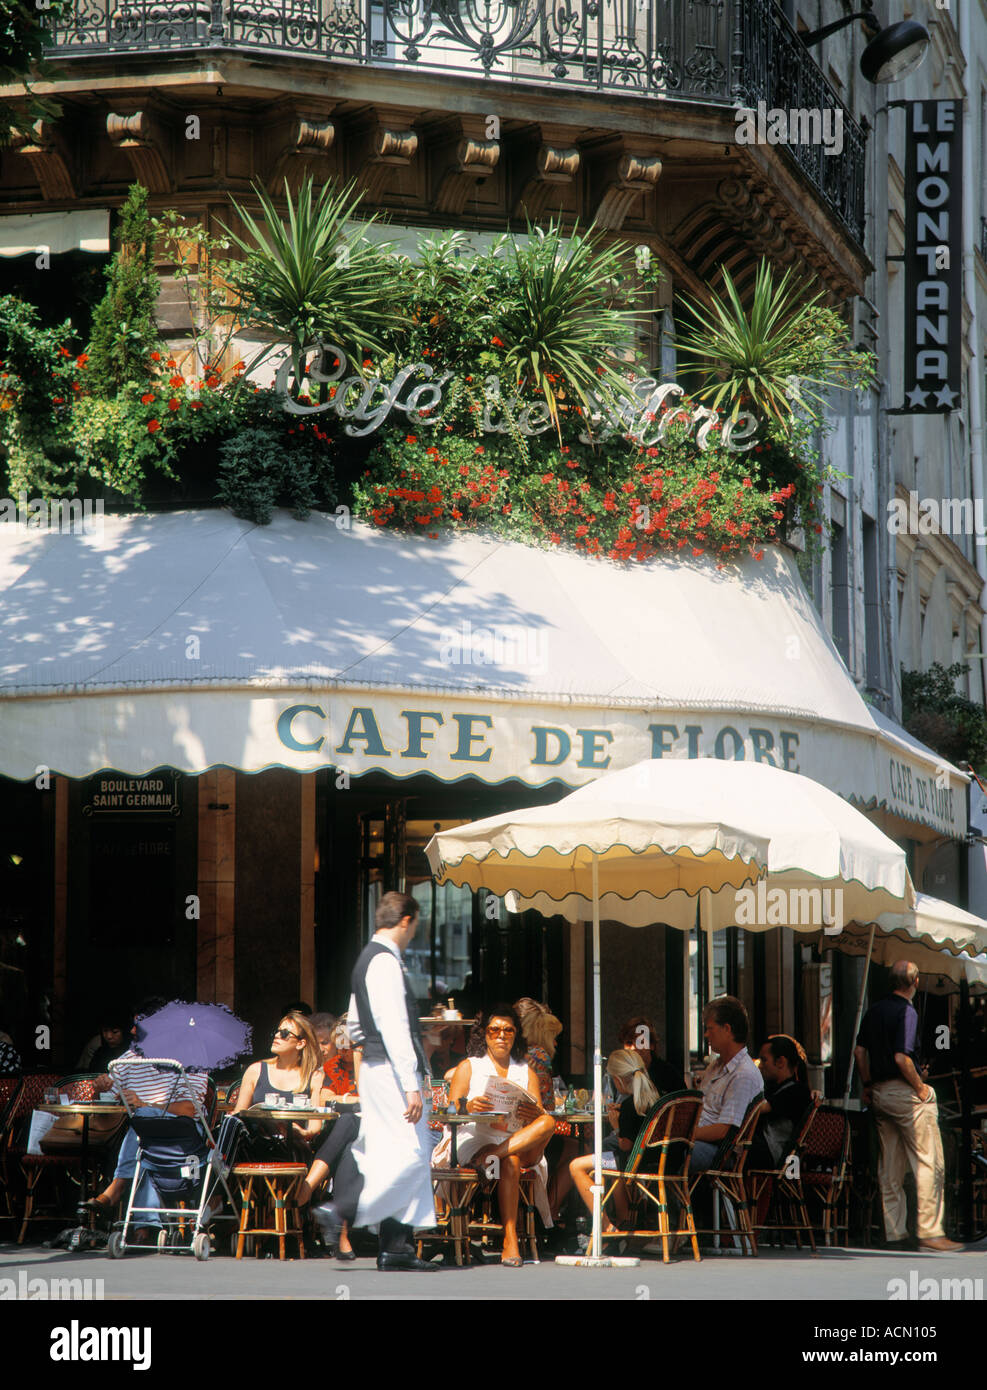 FRANCE PARIS SAINT GERMAIN CAFE DE FLORE  Stock Photo